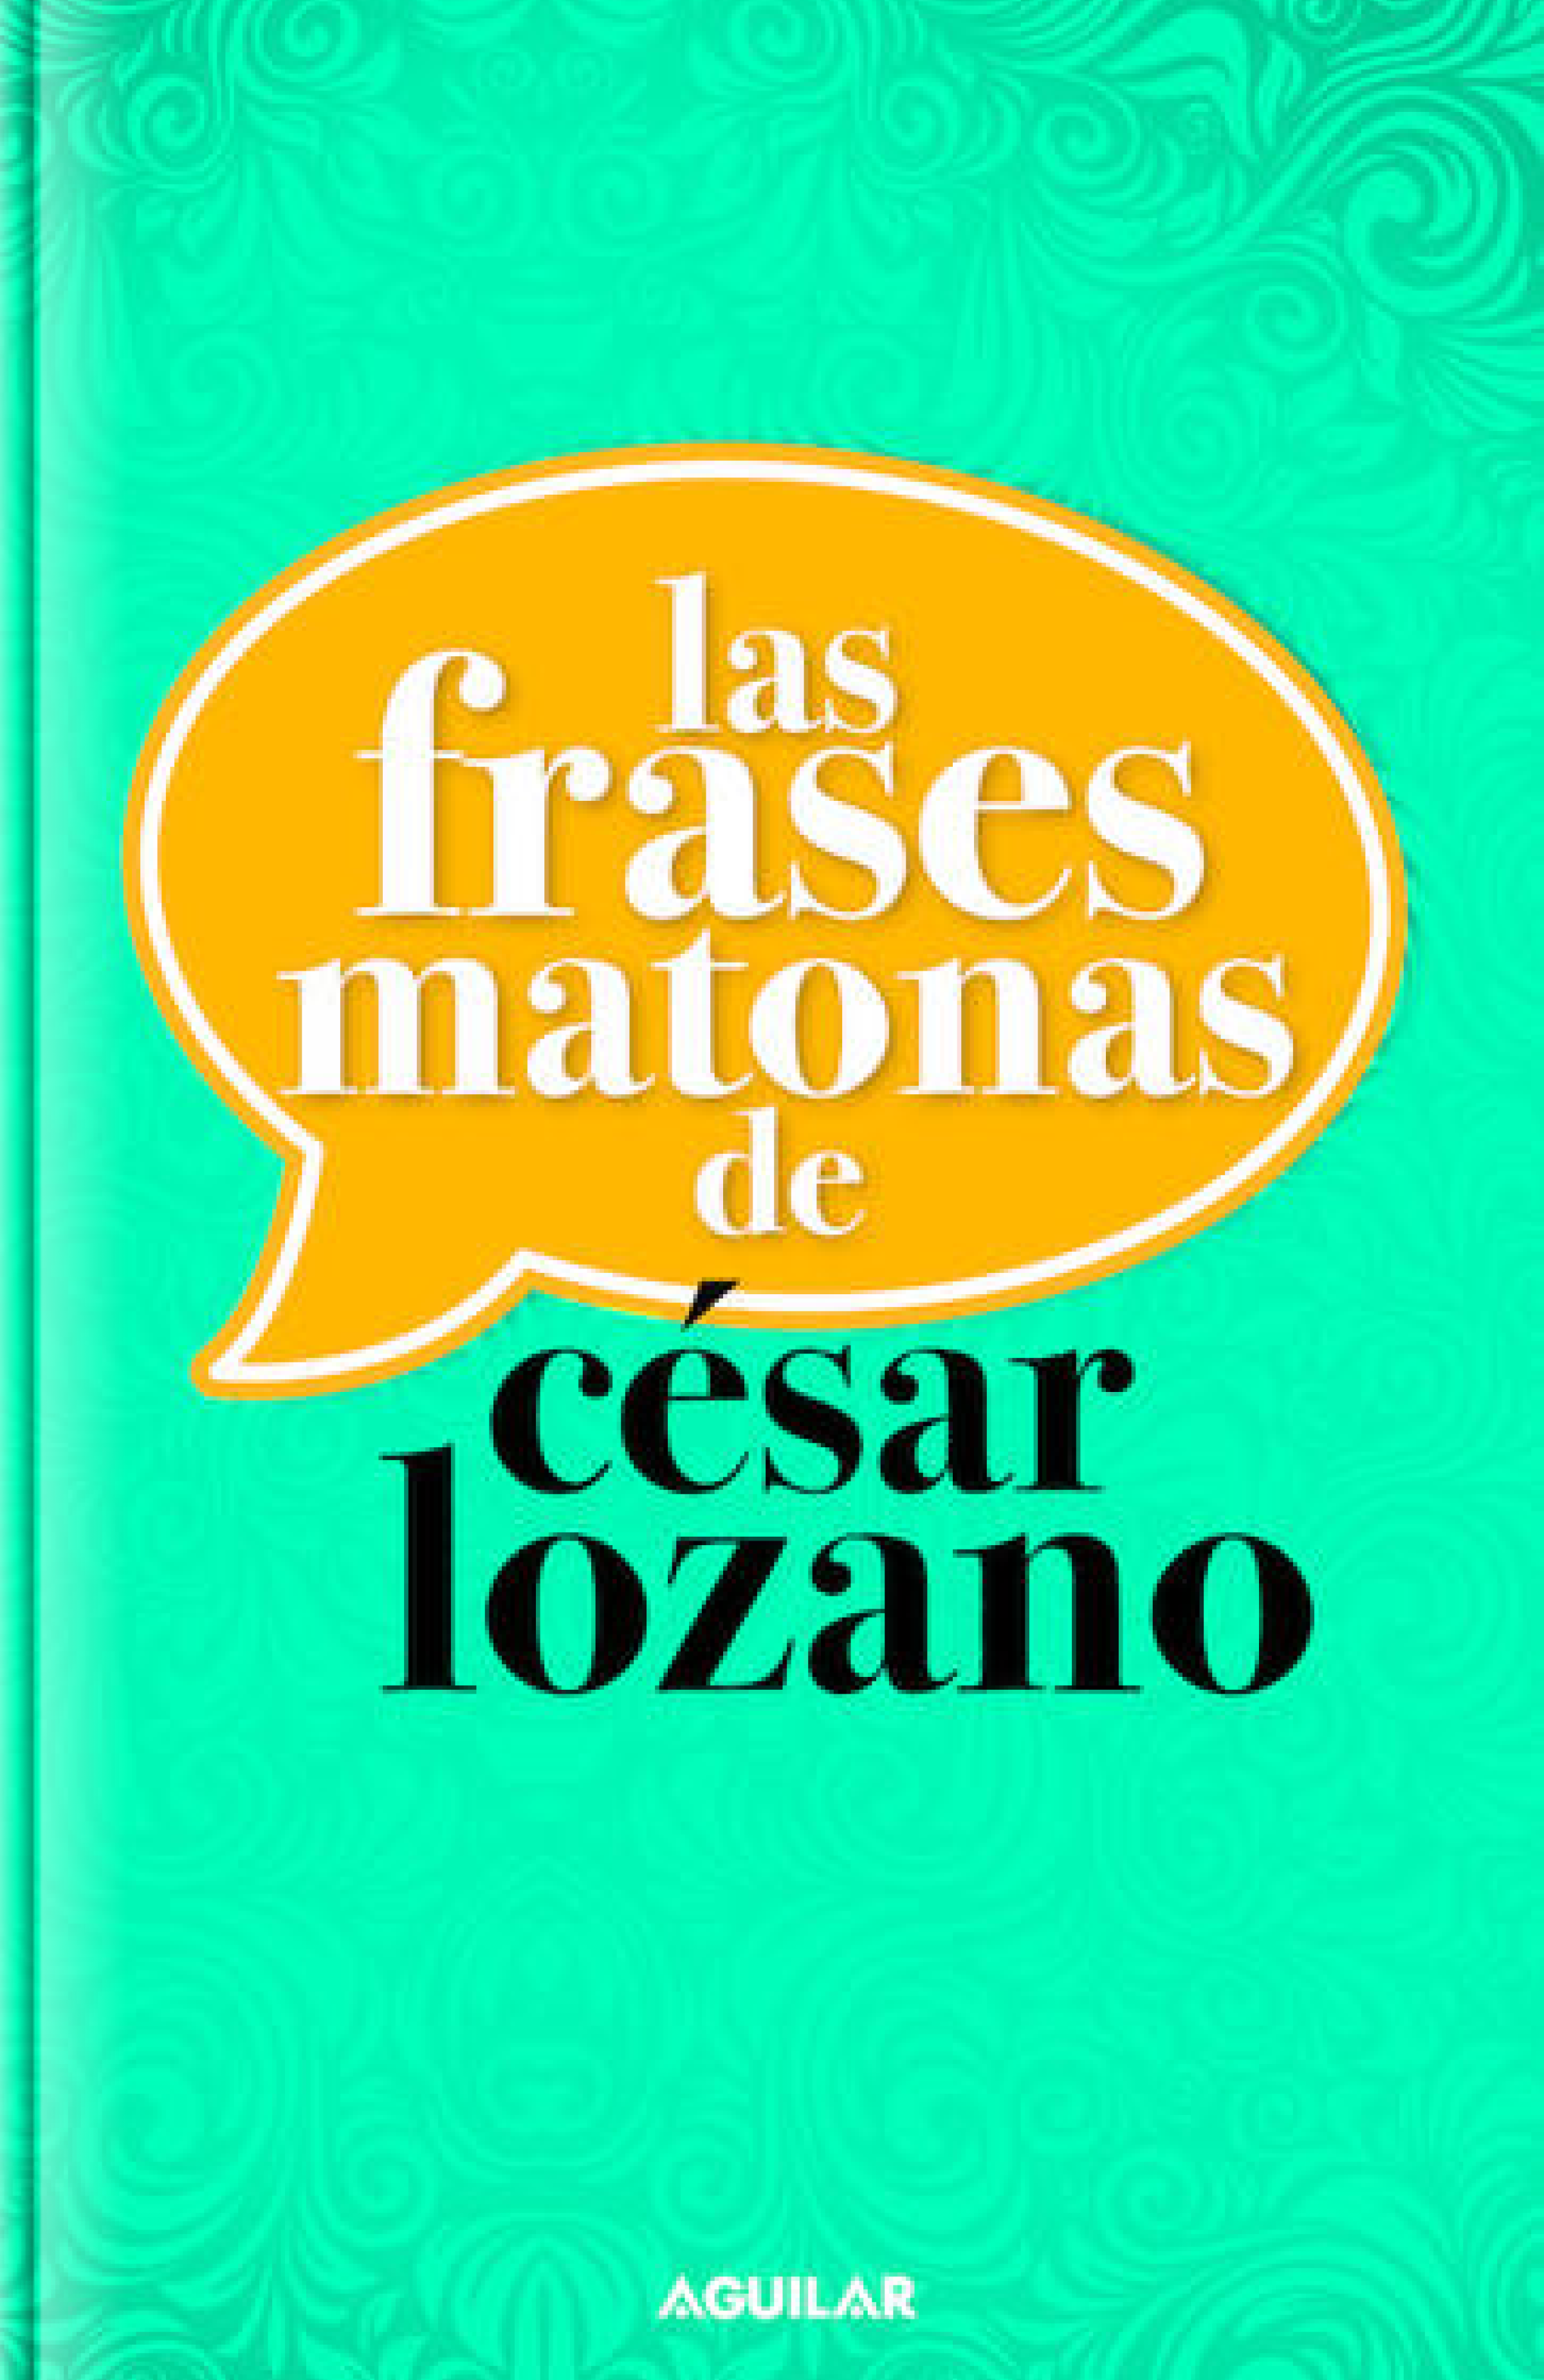 Las Frases Matonas de César Lozano